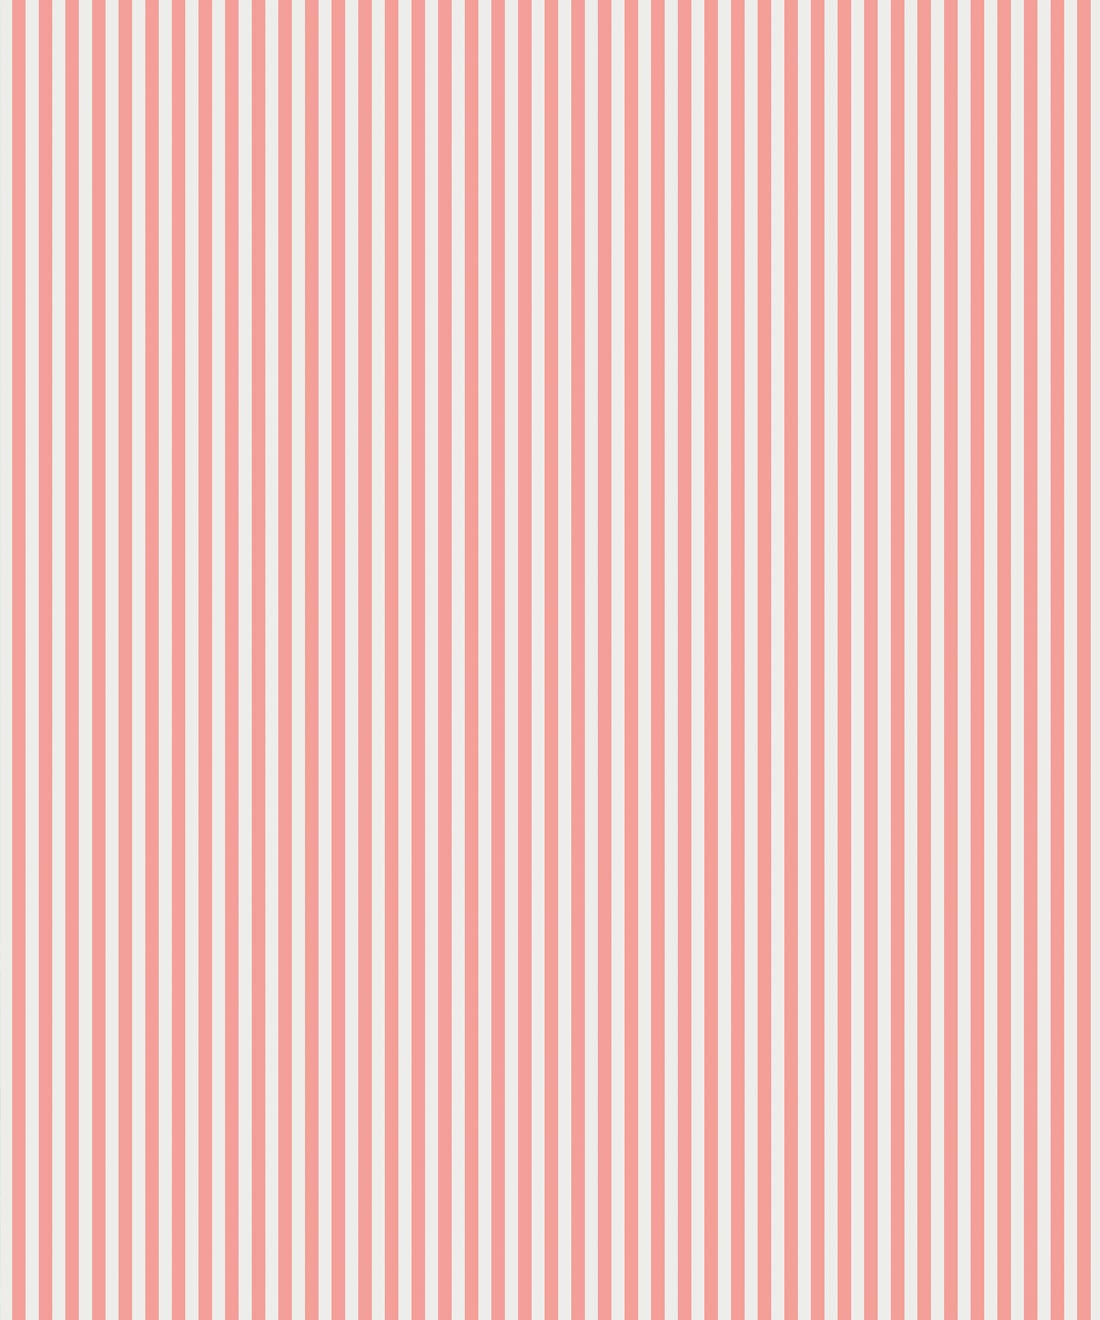 candy stripe wallpaperredpinklinepatternpeach